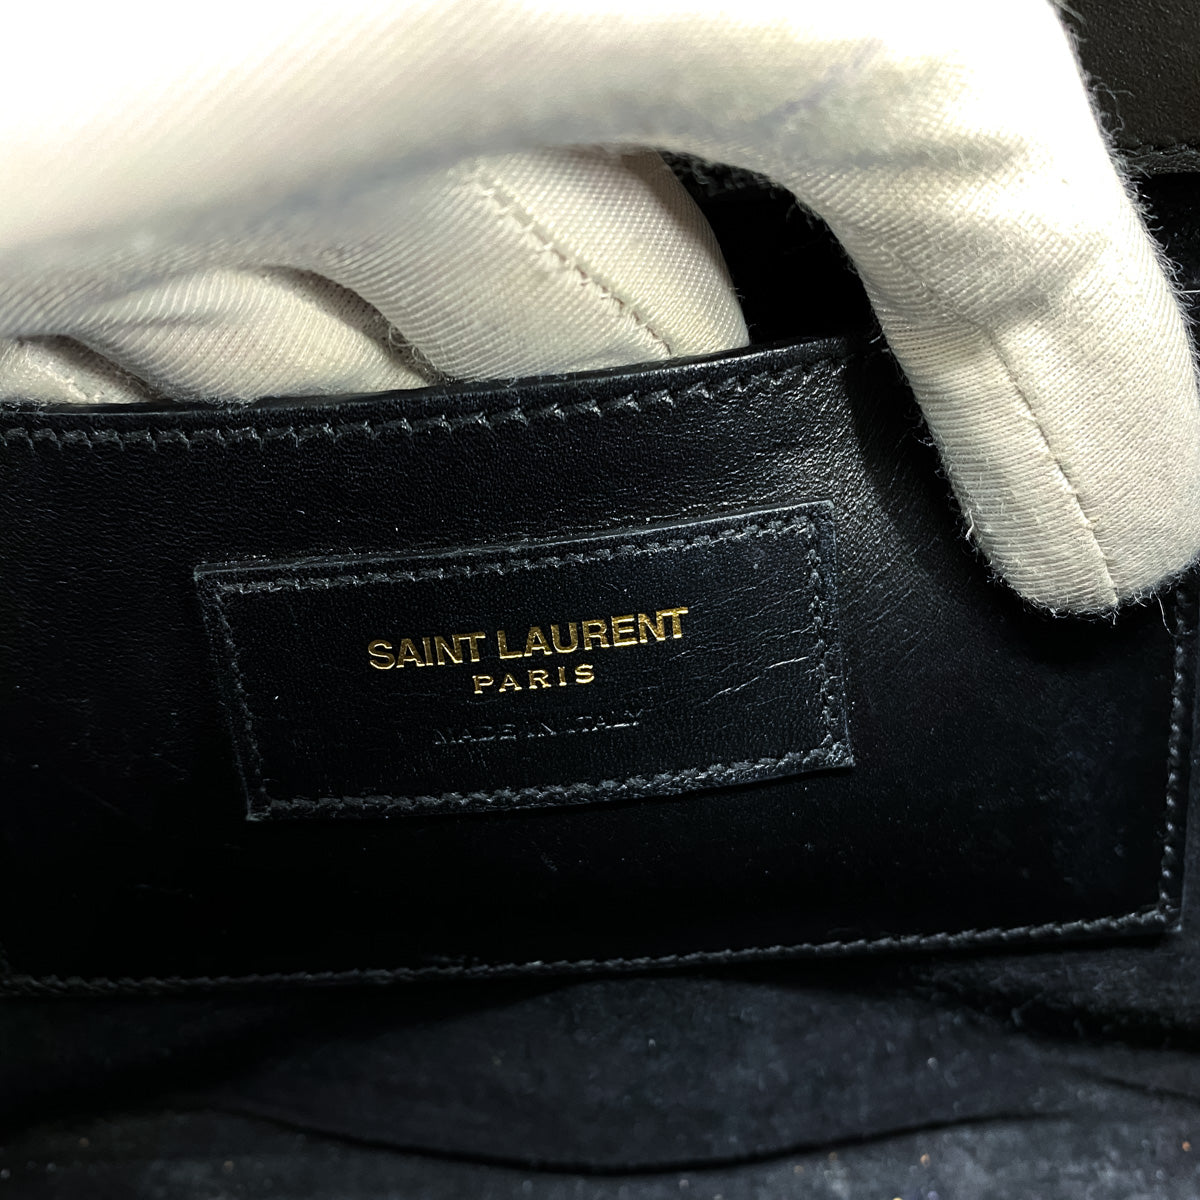 SAINT LAURENT PARIS Kate Medium Chain Shoulder Bag Leather Grey 364021  90193651